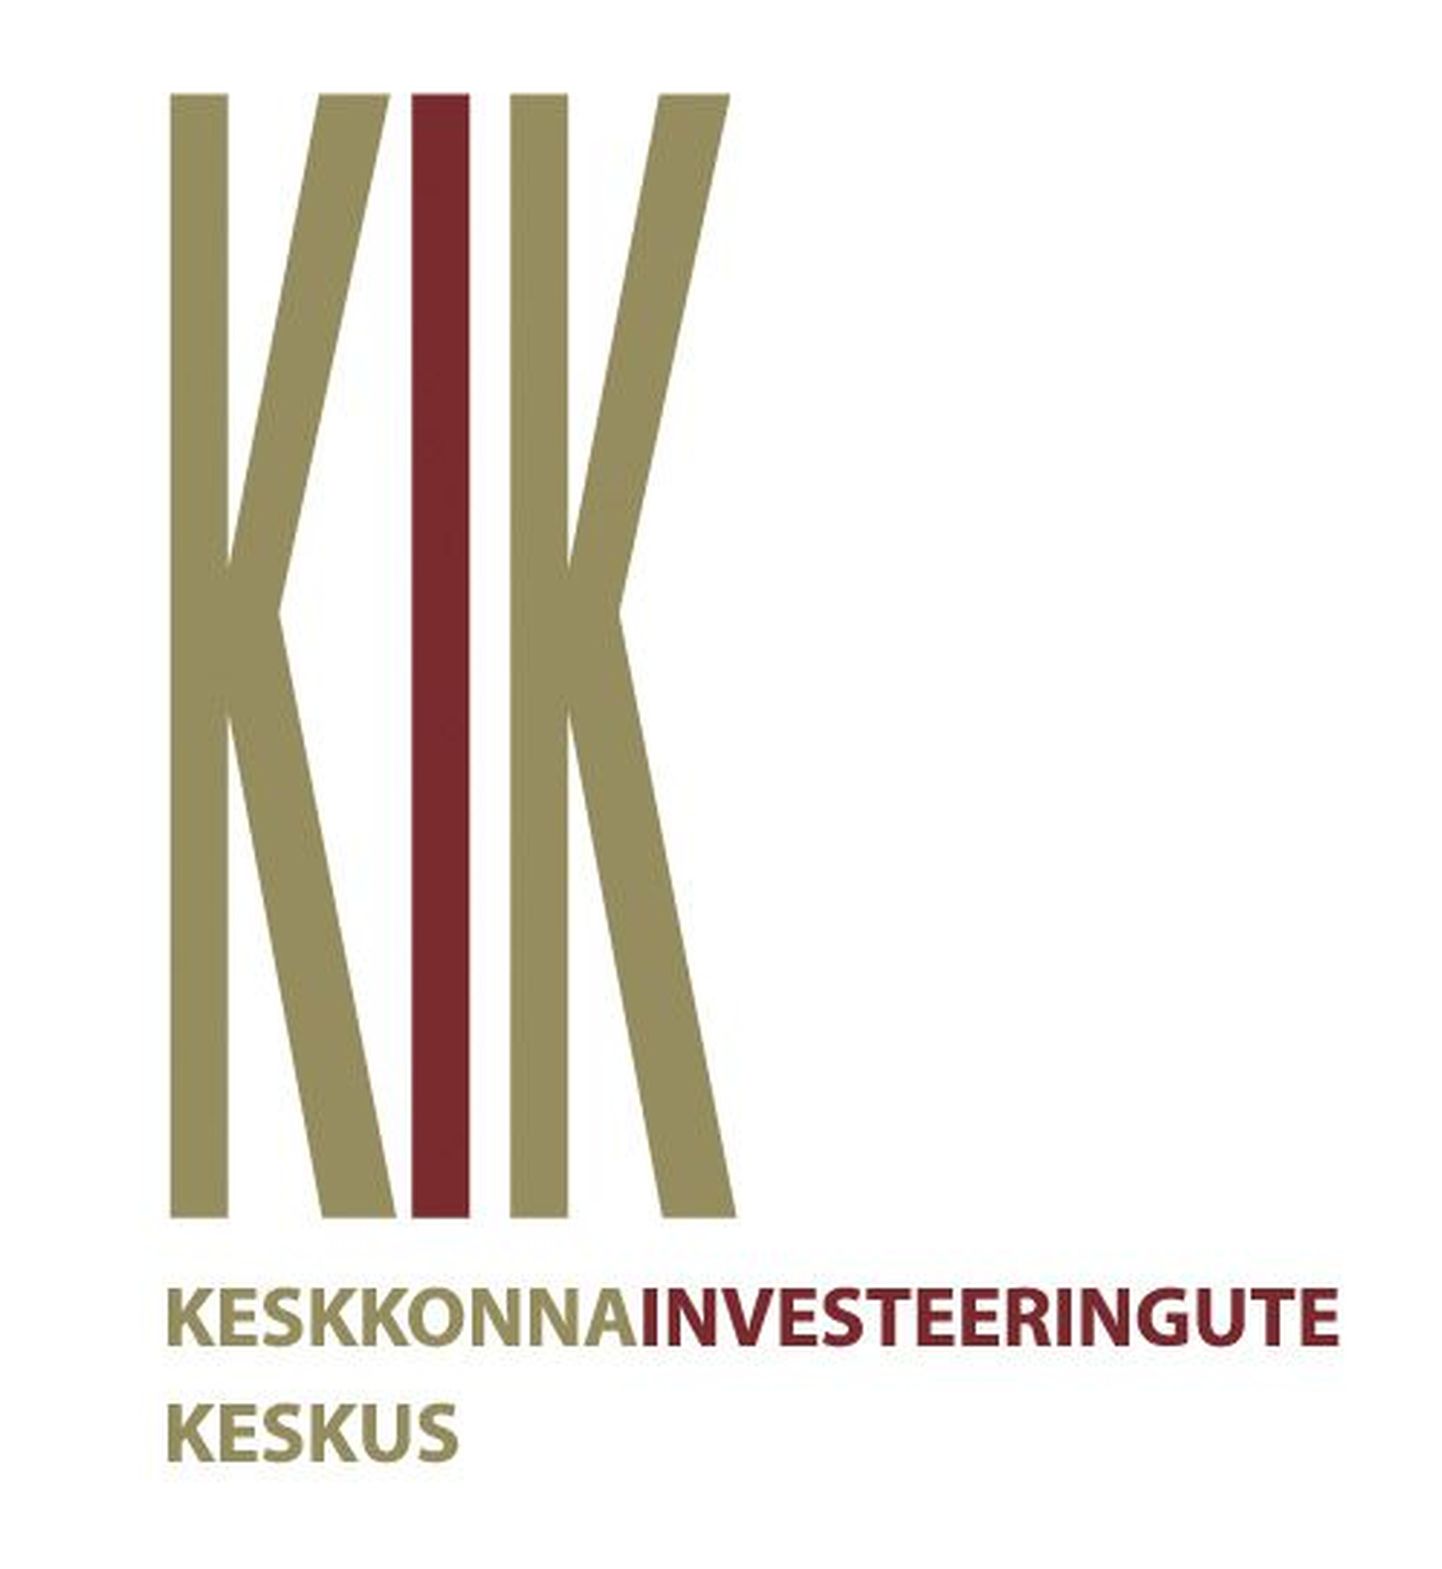 Keskkonnainvesteeringute keskuse logo